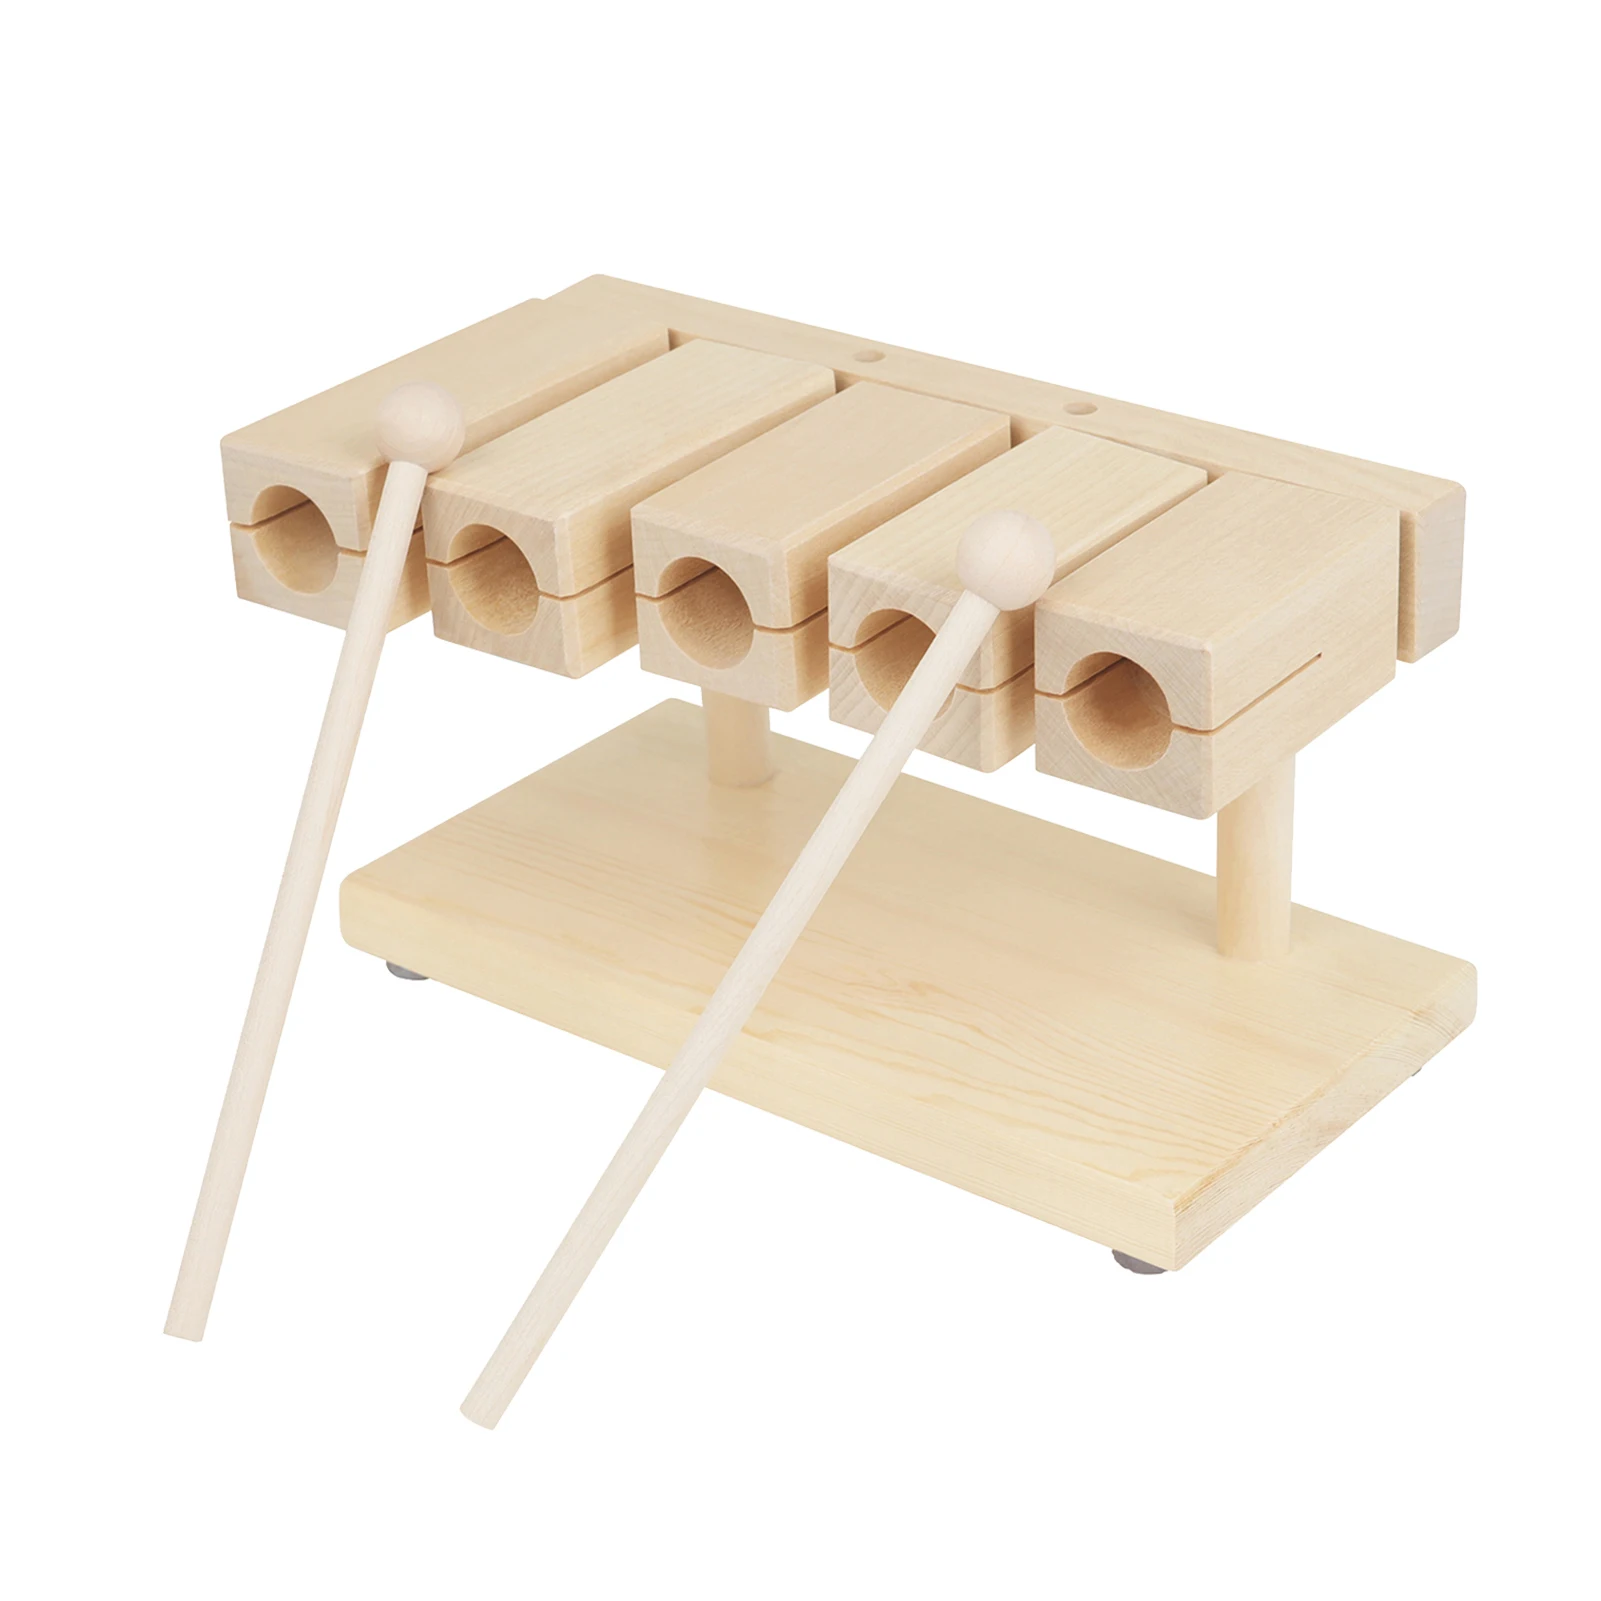 

Деревянный ритмичный блок, мягкий кленовый материал, 5 оттенков, музыкальный инструмент с молотком для йоги, дошкольного образования